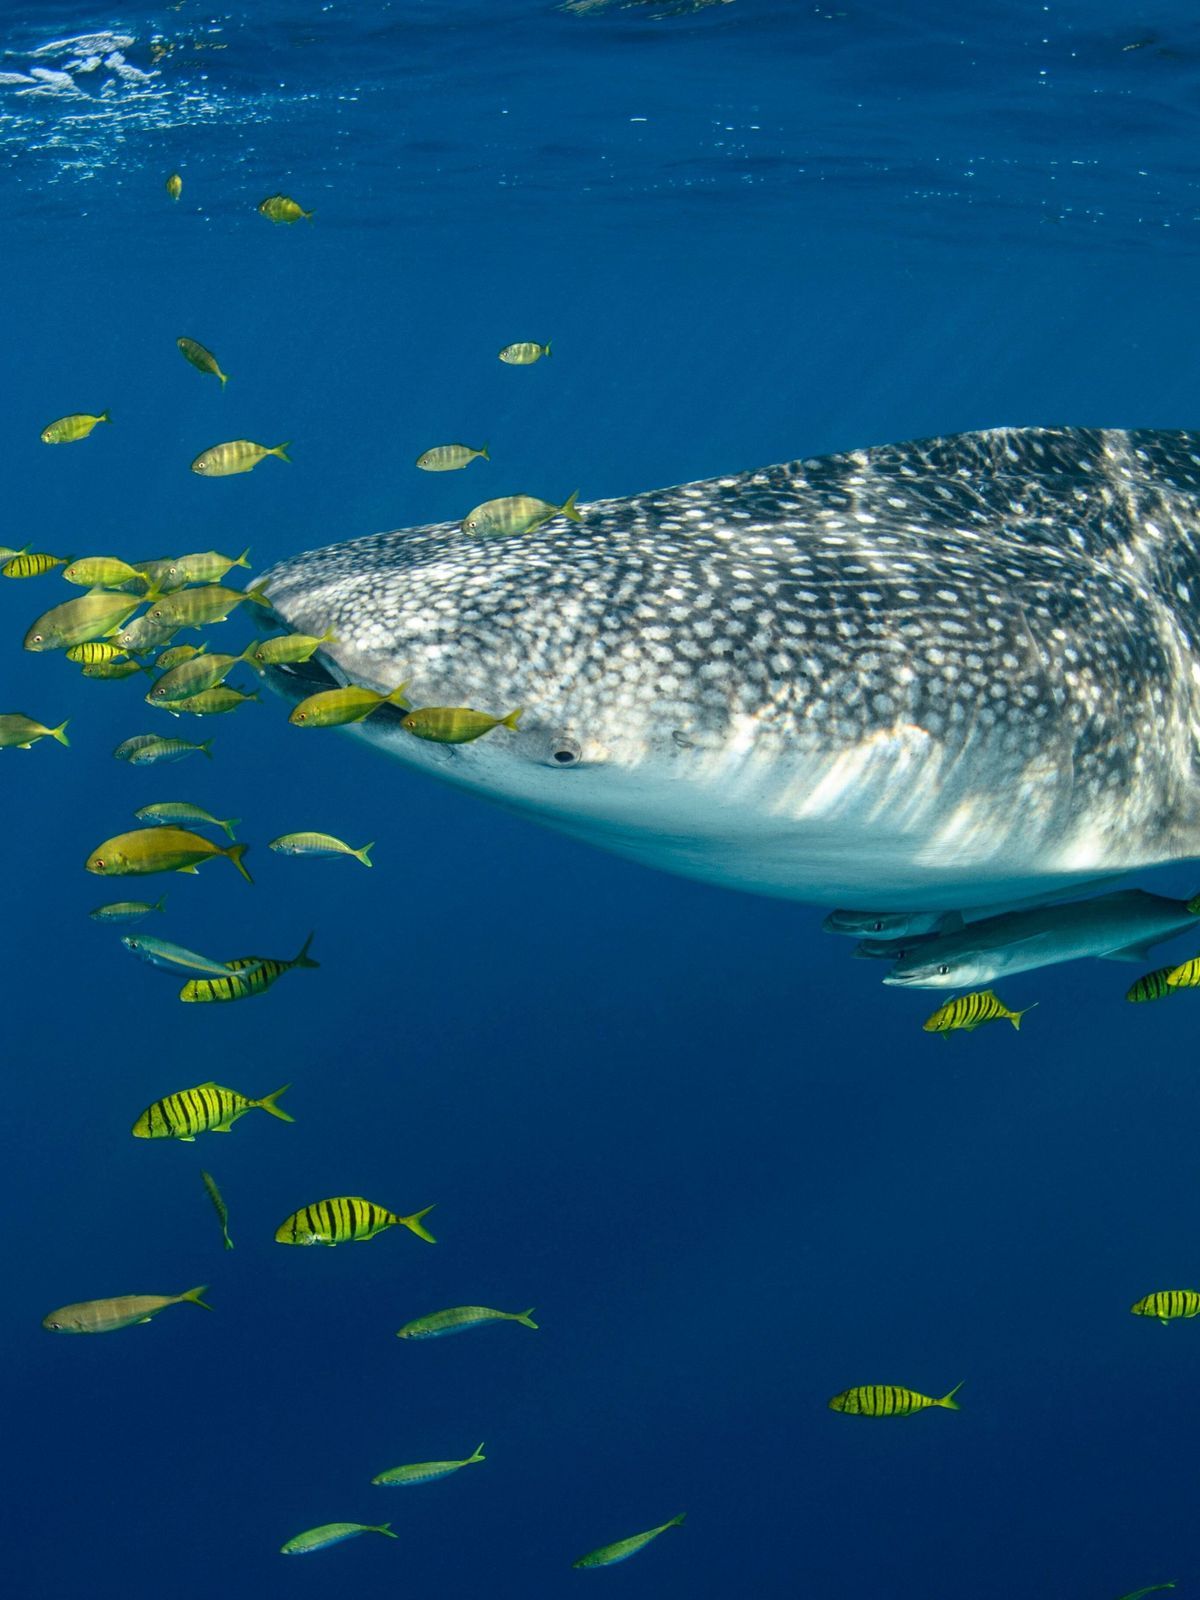 Walhai-Größe-gefährlich-Gewicht-größter-Fisch-imago images 94117132